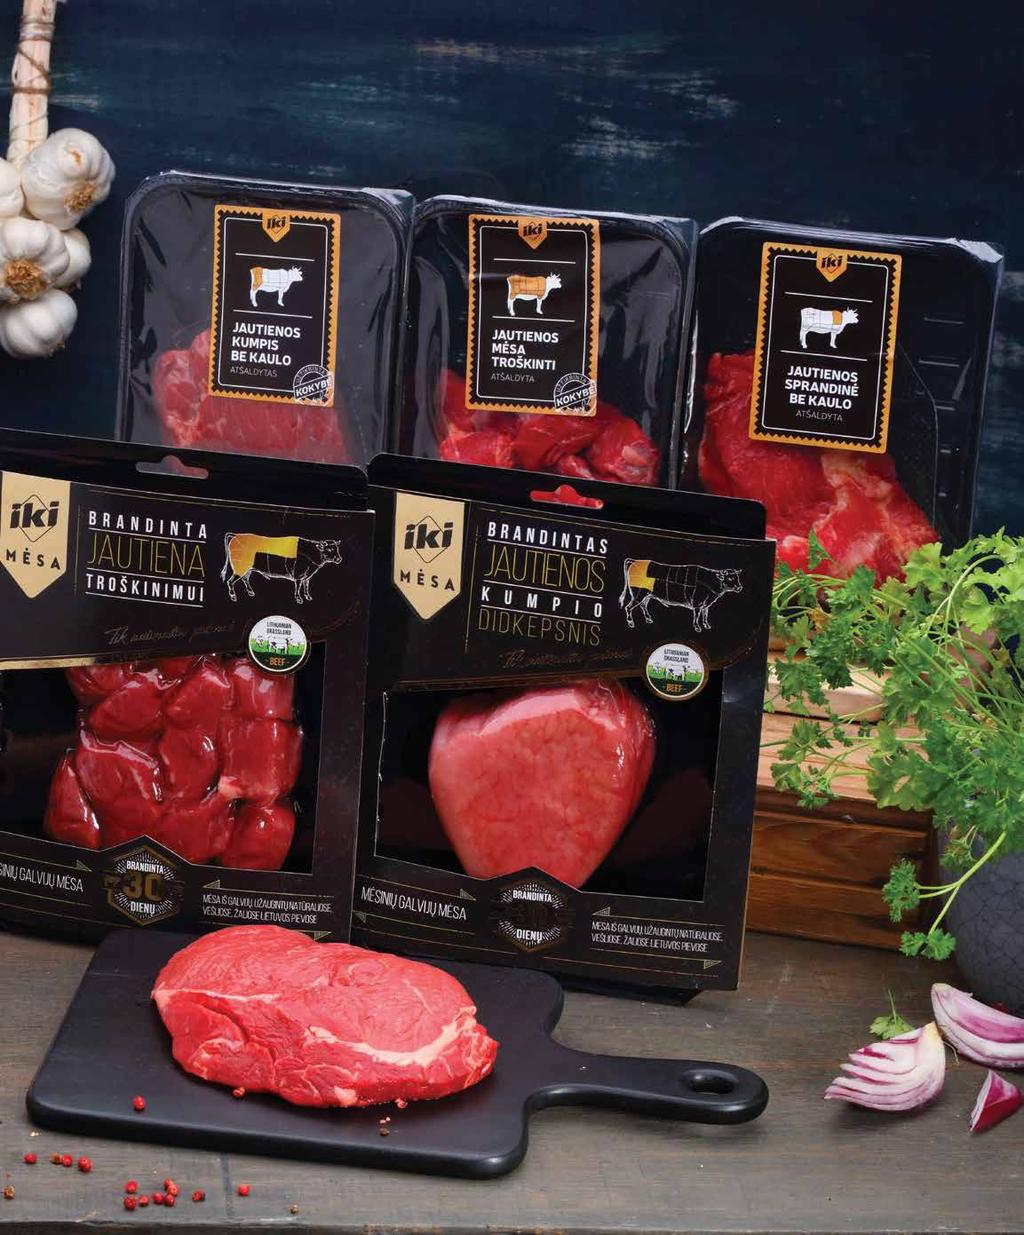 2 2 2. -15 % IKI MĖSA fasuotai jautienai Lietuvos ūkiuose išaugintų galvijų mėsai pirkėjai teikia pirmenybę. Šį lietuvišką produktą jie jau žino ir vertina.